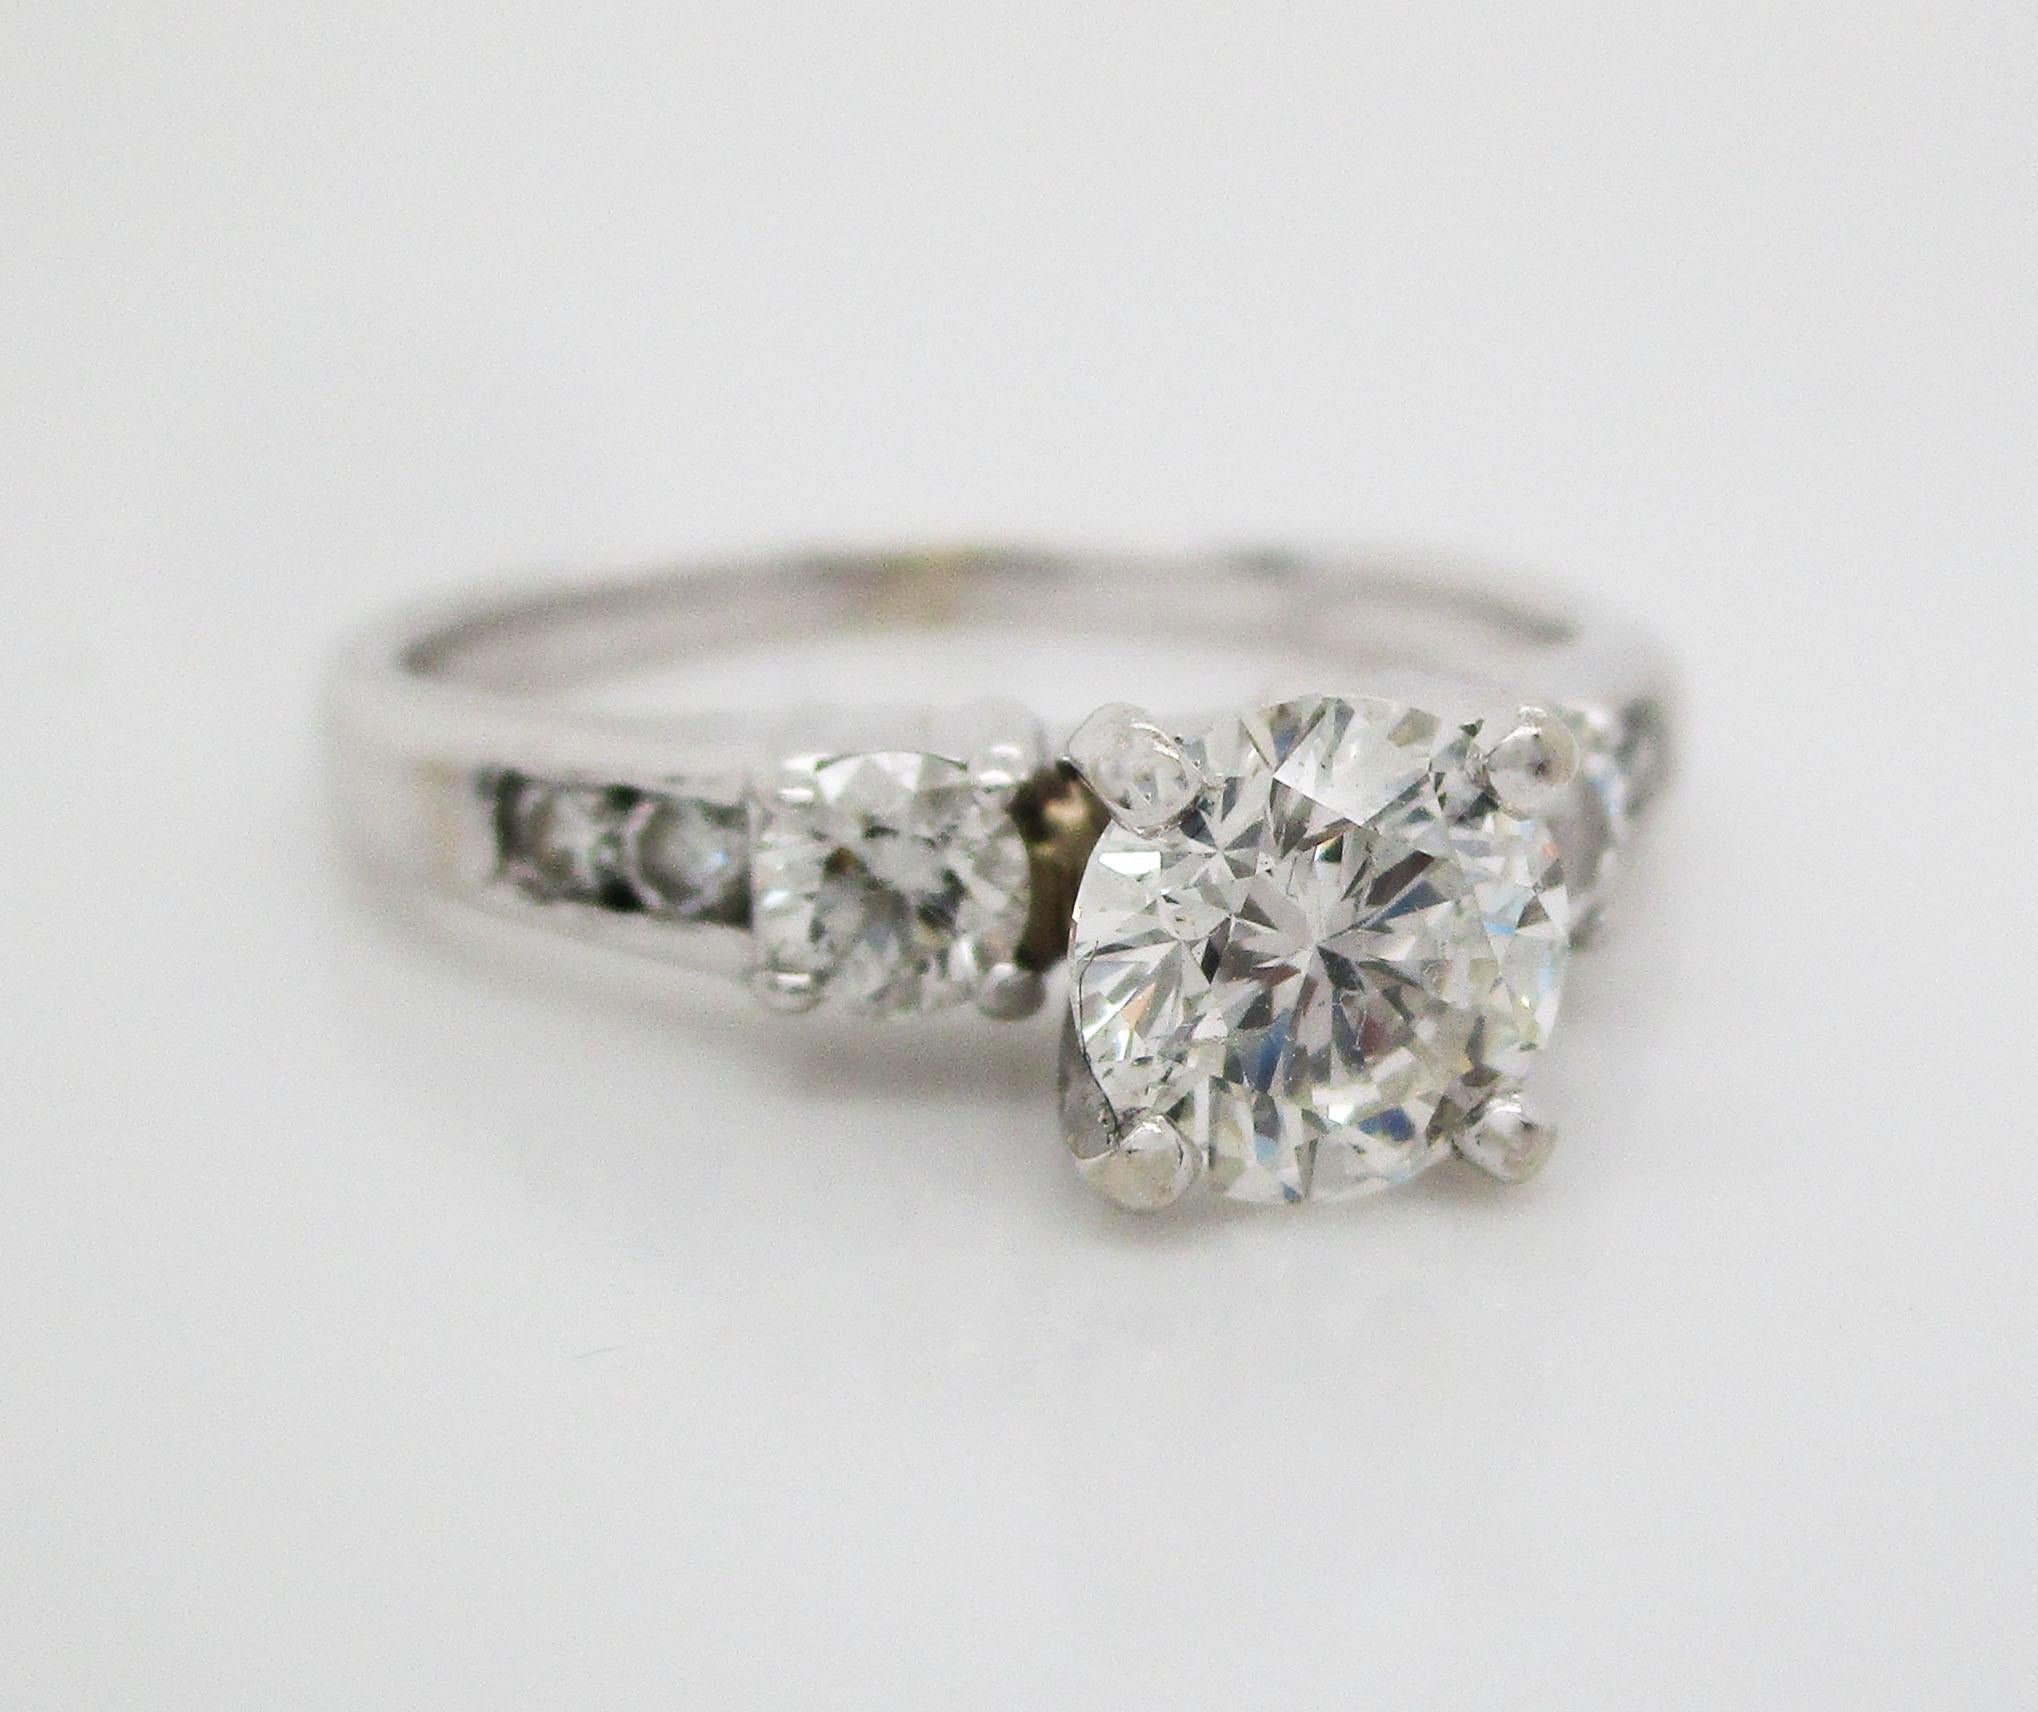 Contemporary 14 Karat White Gold Certified 0.78 Carat Diamond Engagement Ring